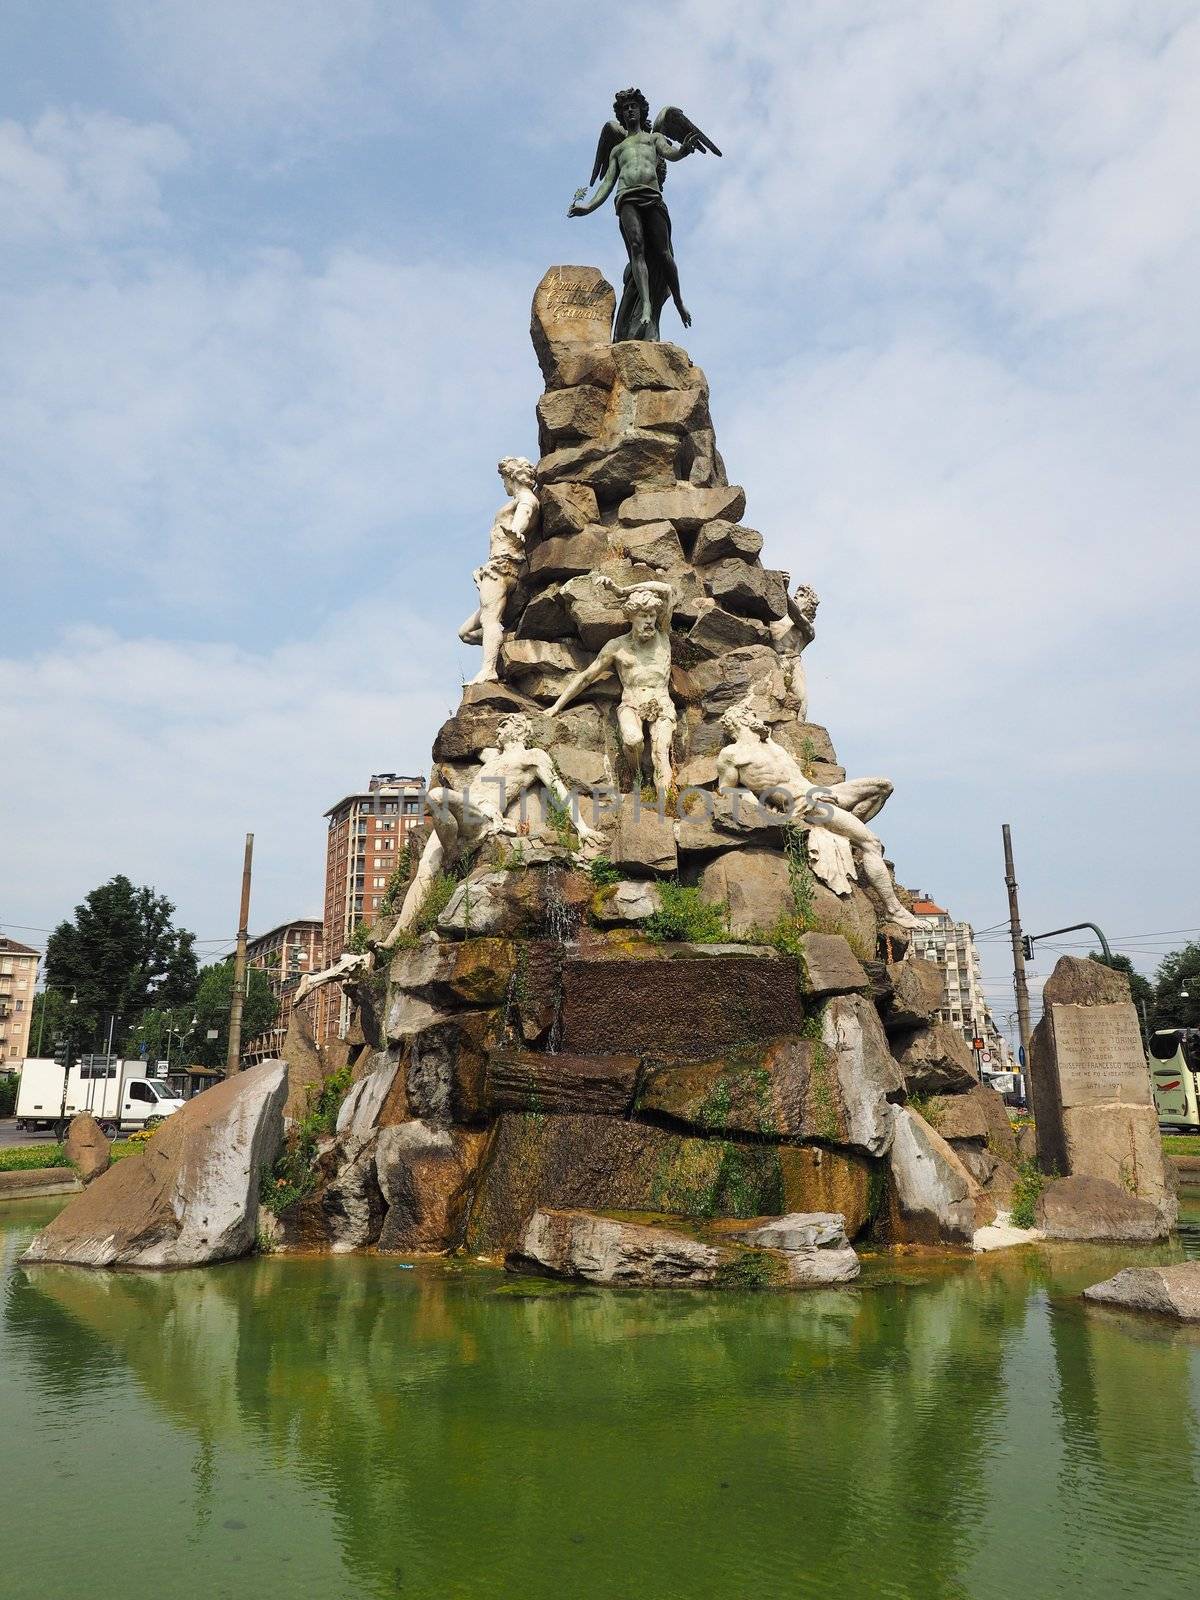 Traforo del Frejus statue in Turin by claudiodivizia